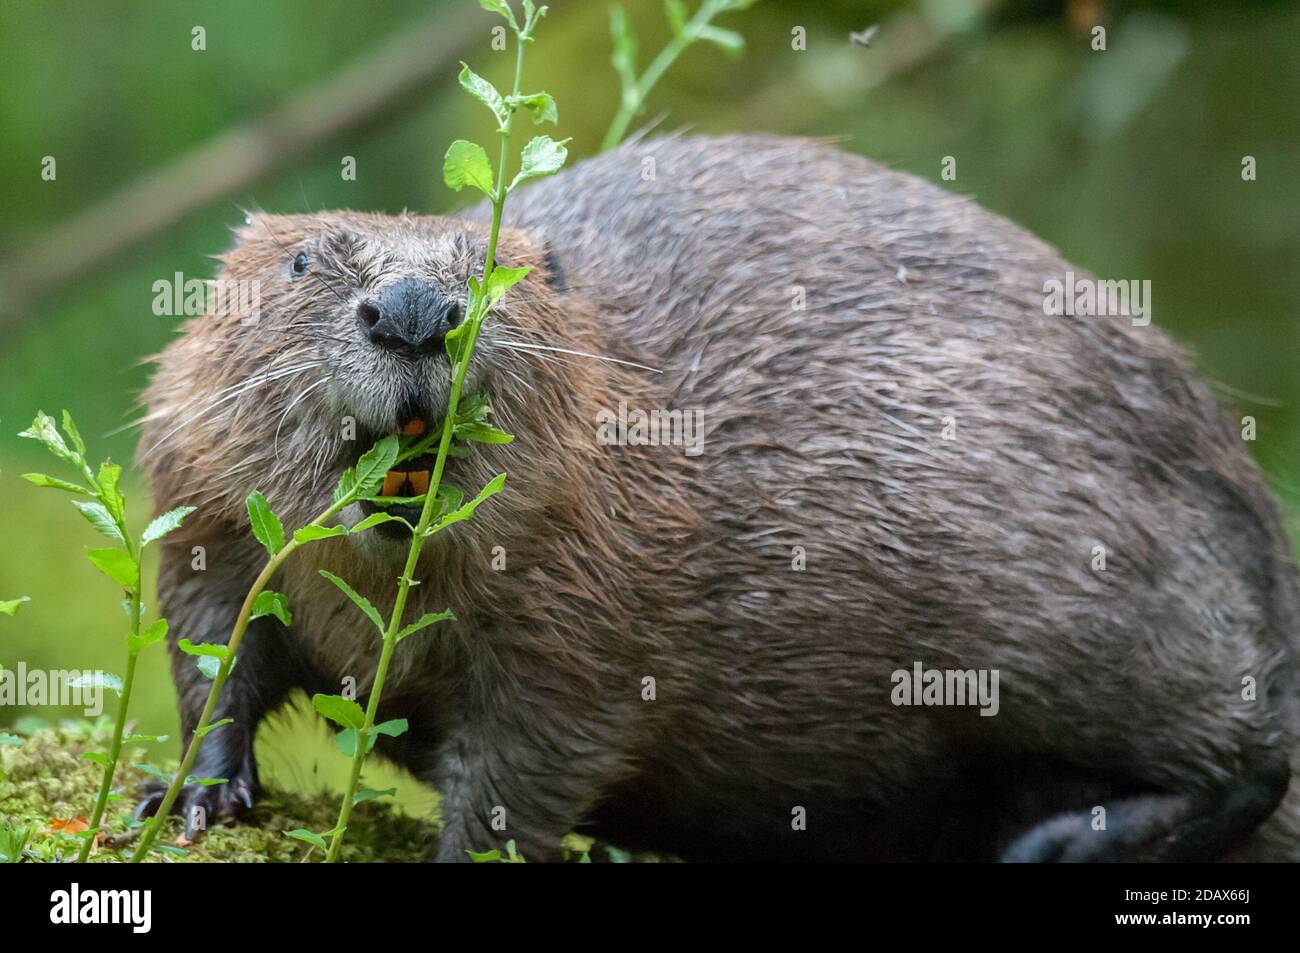 eurasian beaver castor fiber Stock Photo